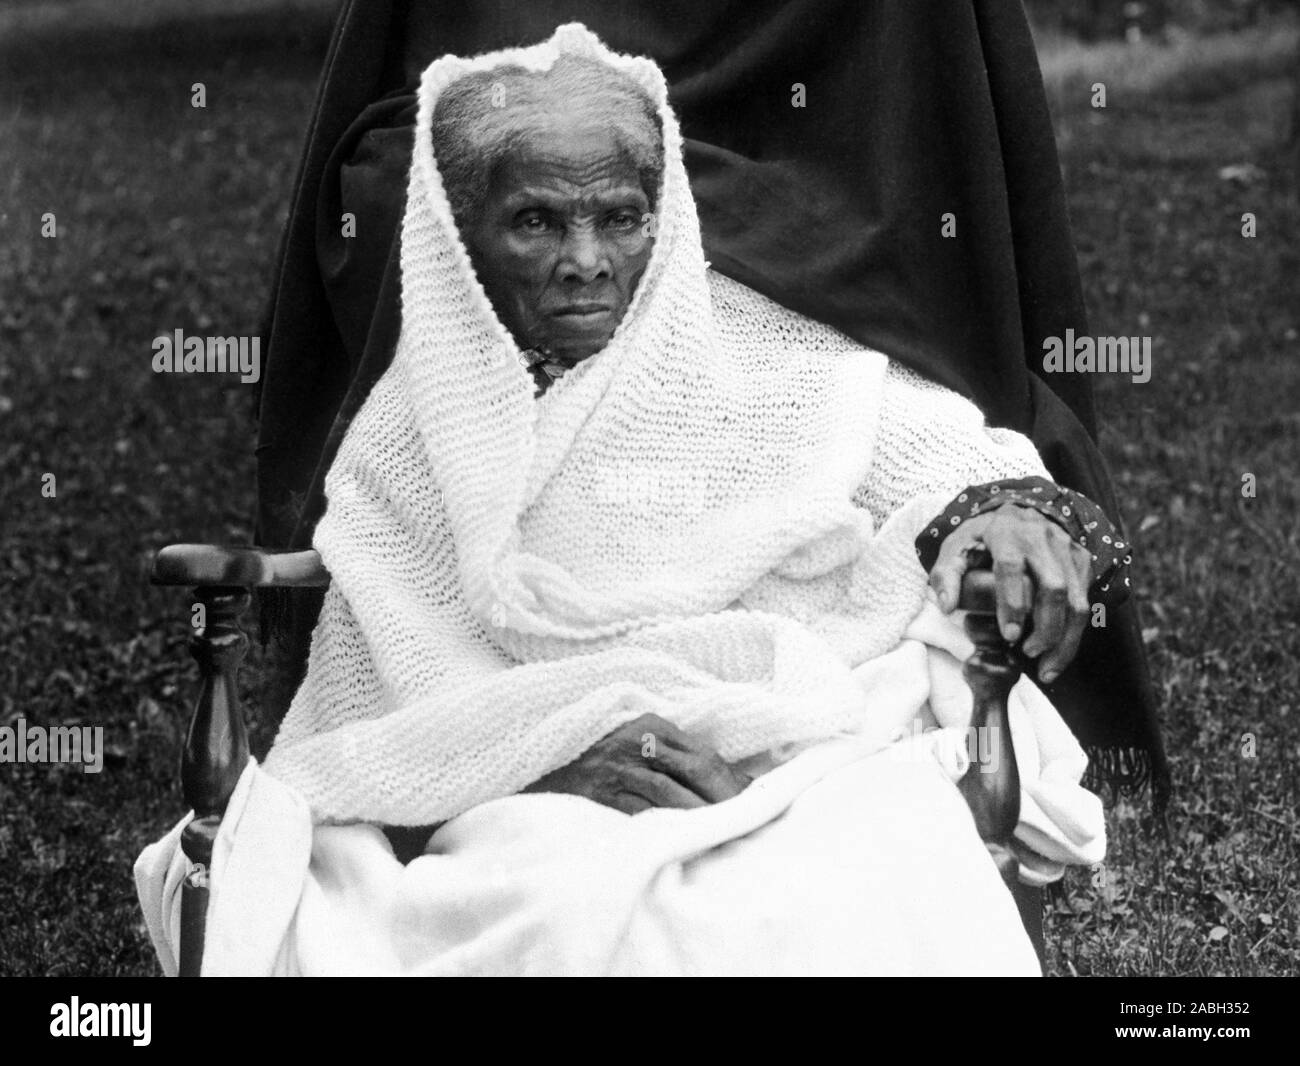 Vintage photo portrait de Harriet Tubman (c1820 - 1913). Nés dans l'esclavage, Tubman (nom de naissance Araminta Ross) se sont échappés et plus tard visite d'autres esclaves à la liberté via le chemin de fer souterrain avant de travailler comme infirmière, spy et scout pour l'Armée de l'Union pendant la guerre civile américaine. Plus tard dans la vie elle engagée dans le travail humanitaire et de promouvoir la cause du suffrage féminin. Photo vers 1911, probablement prise à la maison de Tubman Auburn, New York. Banque D'Images